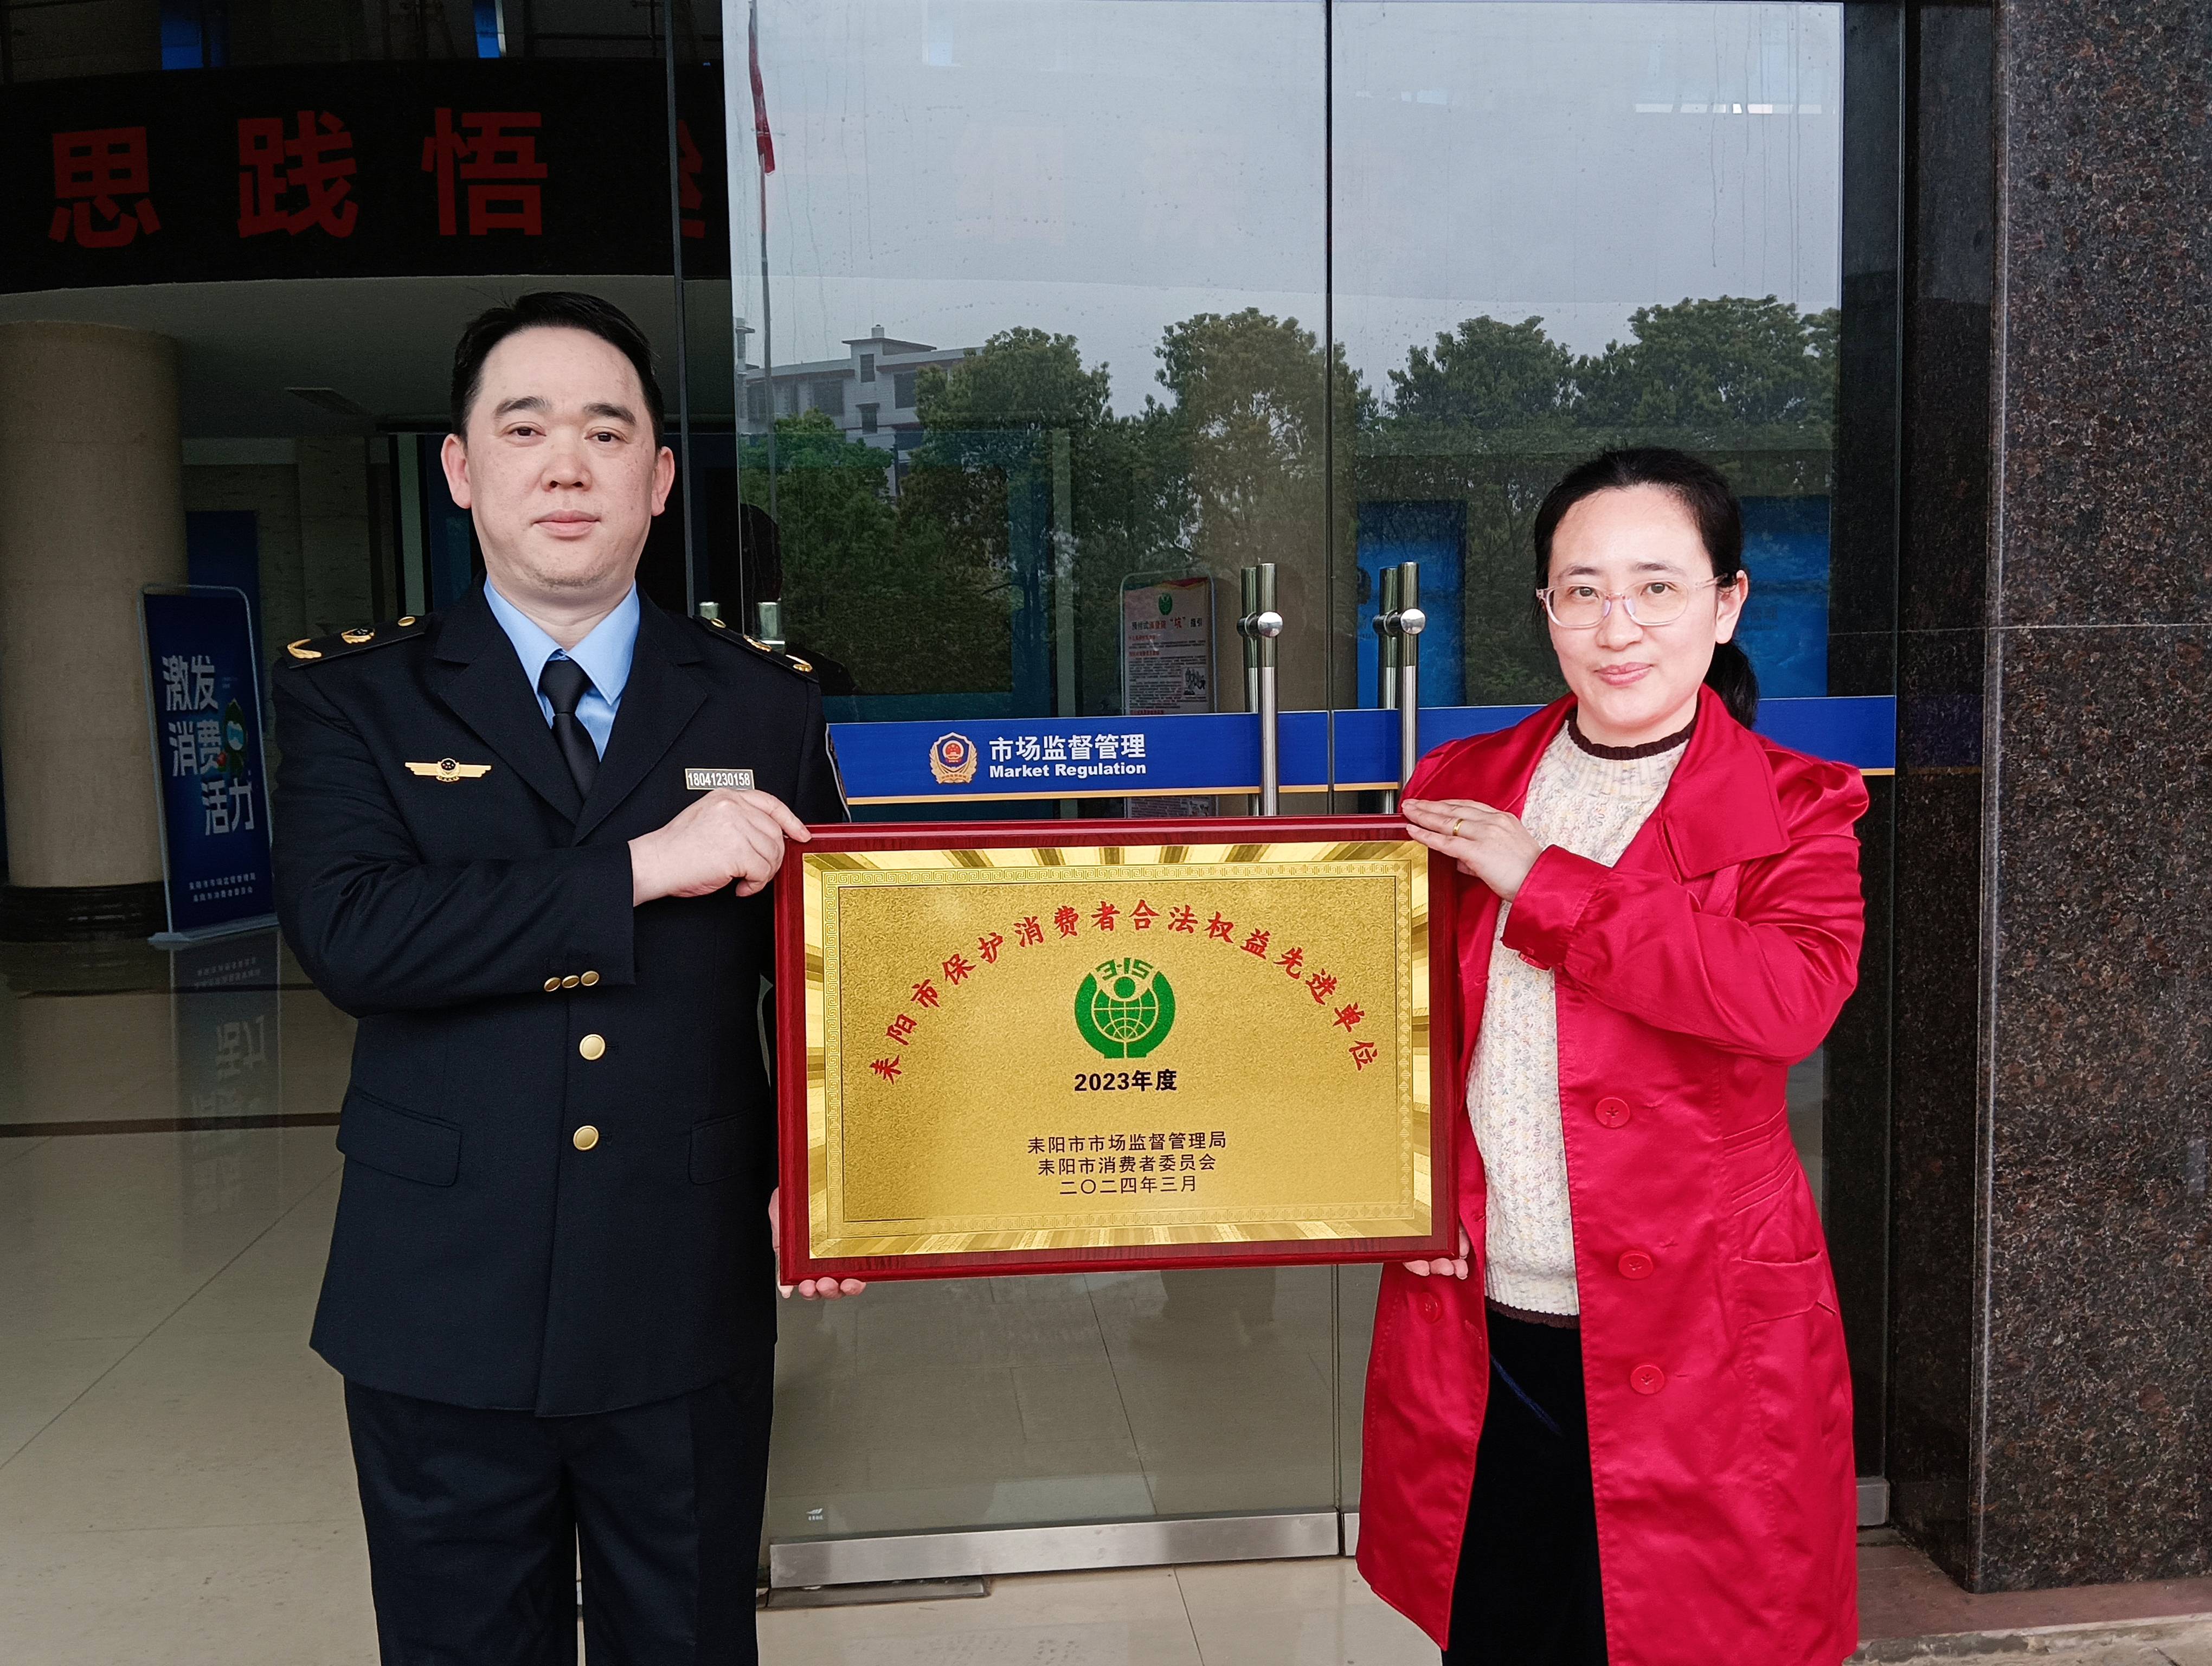 再添新名誉，刘燕酿制公司荣获消费者合法权力进步单位